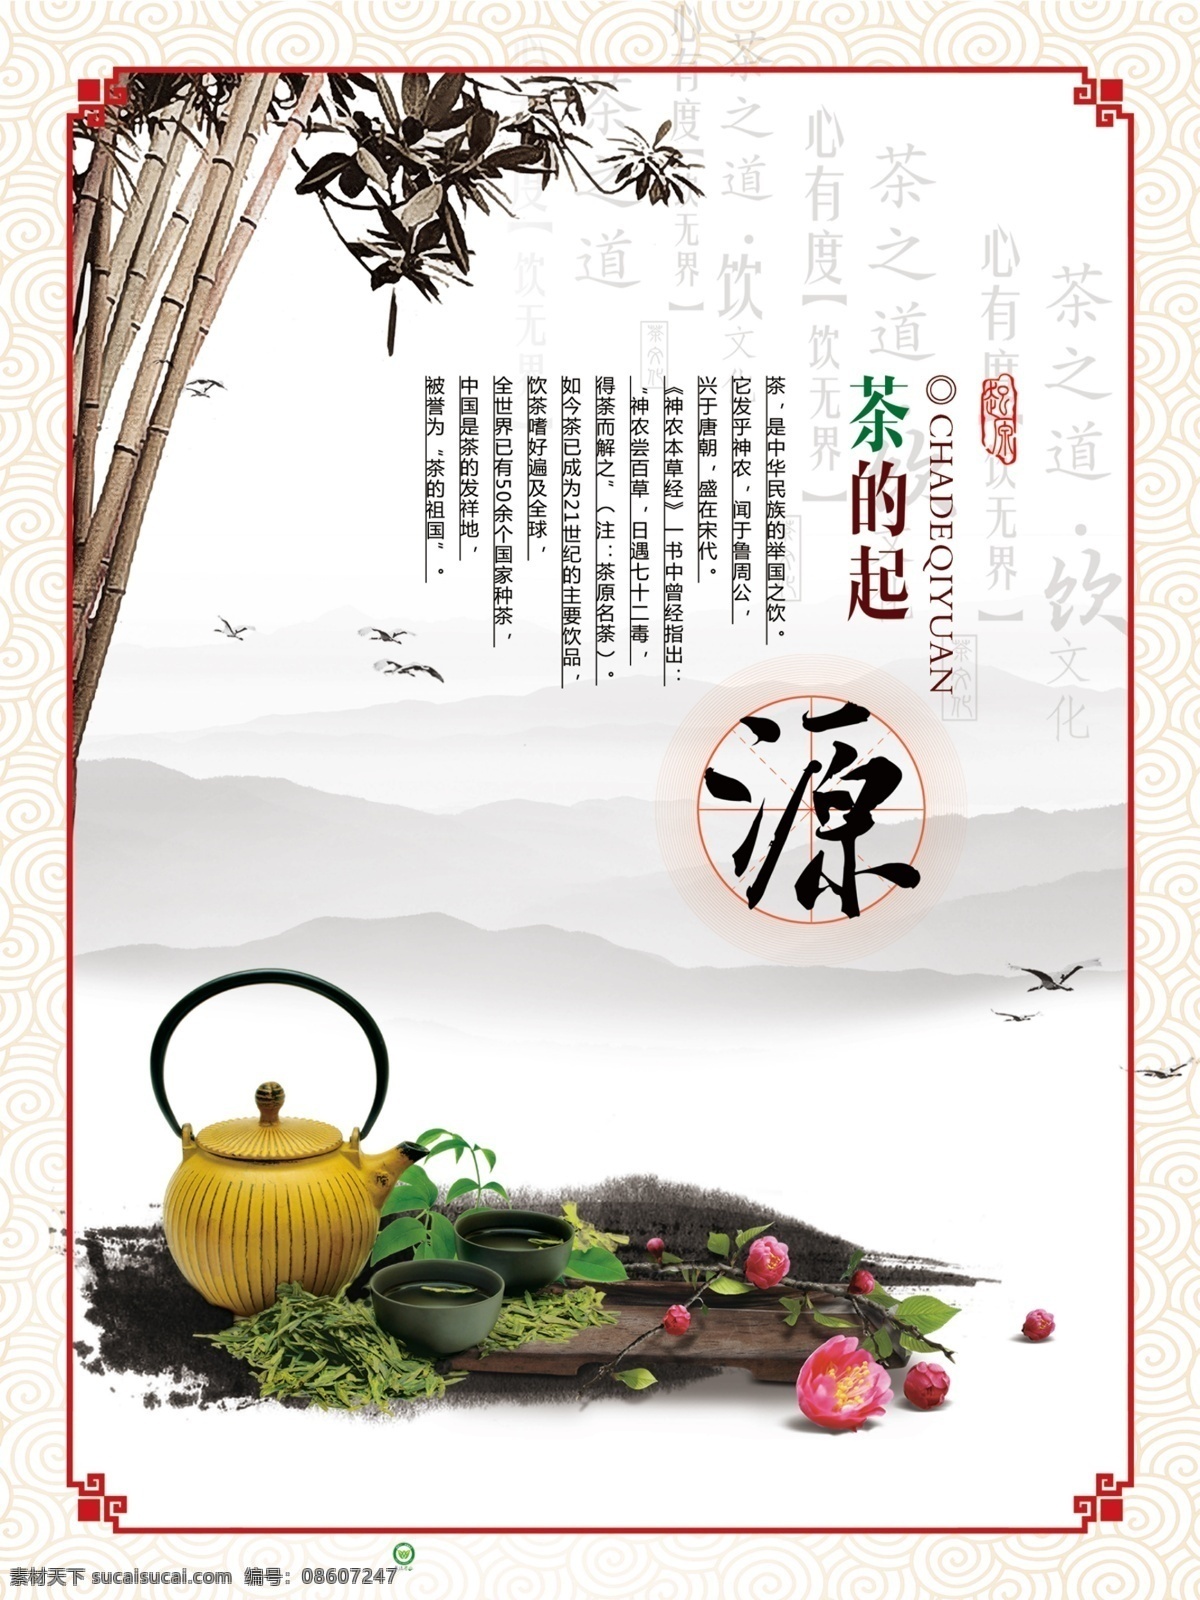 茶文化展板 四合一 简约 茶海报 茶文化图片 茶文化 茶文化知识 茶文化的海报 中国茶文化 禅茶文化 茶健康 挂画 海报素材 广告设计模板 海报 展板 花边 中式边框 中式花边 底纹